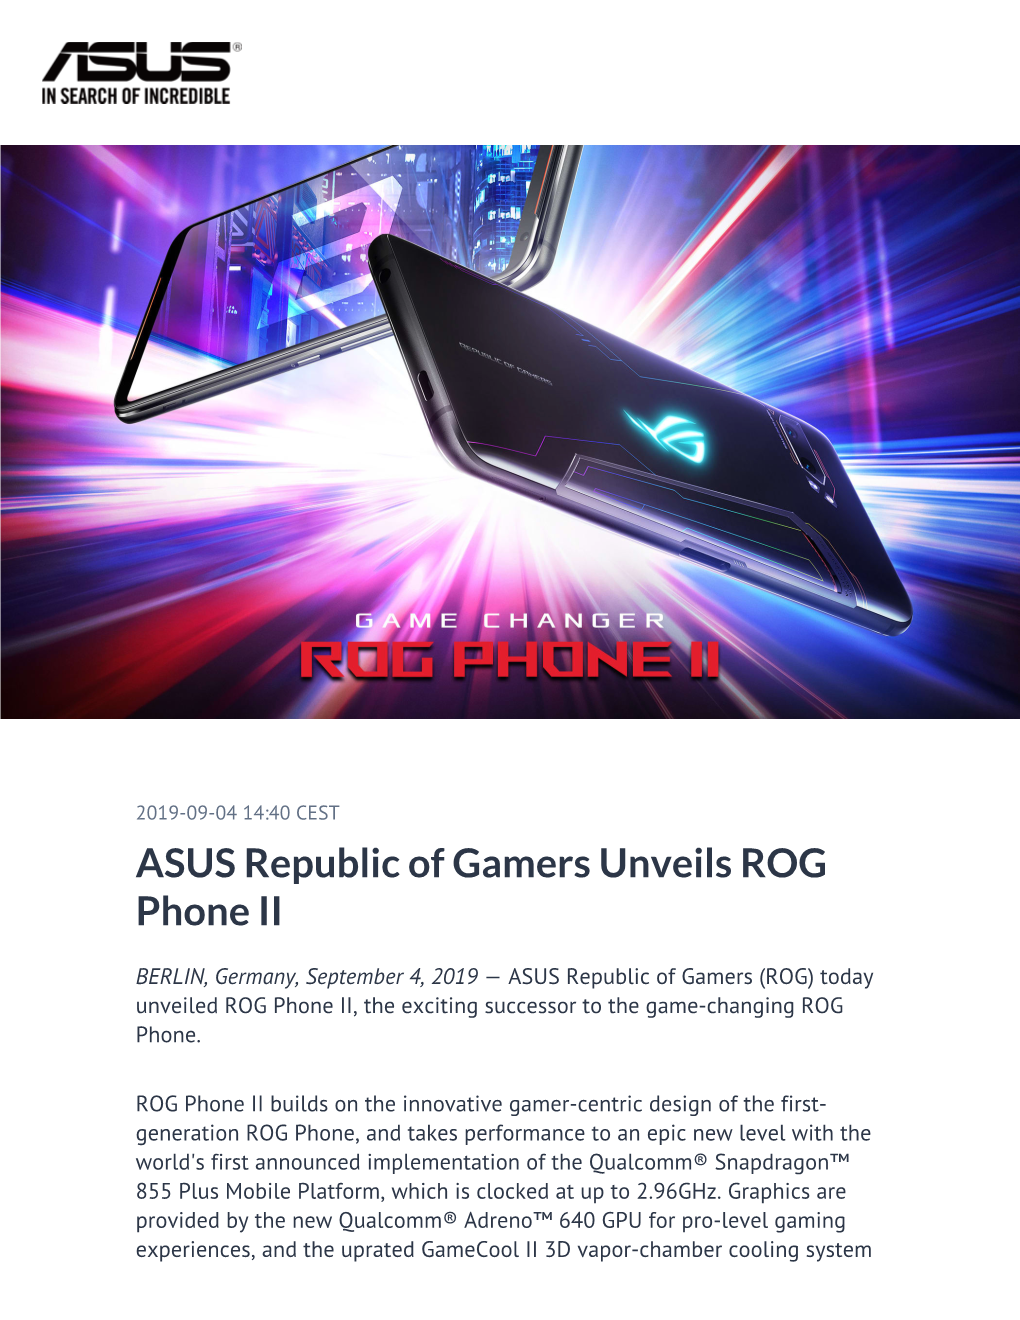 ASUS Republic of Gamers Unveils ROG Phone II